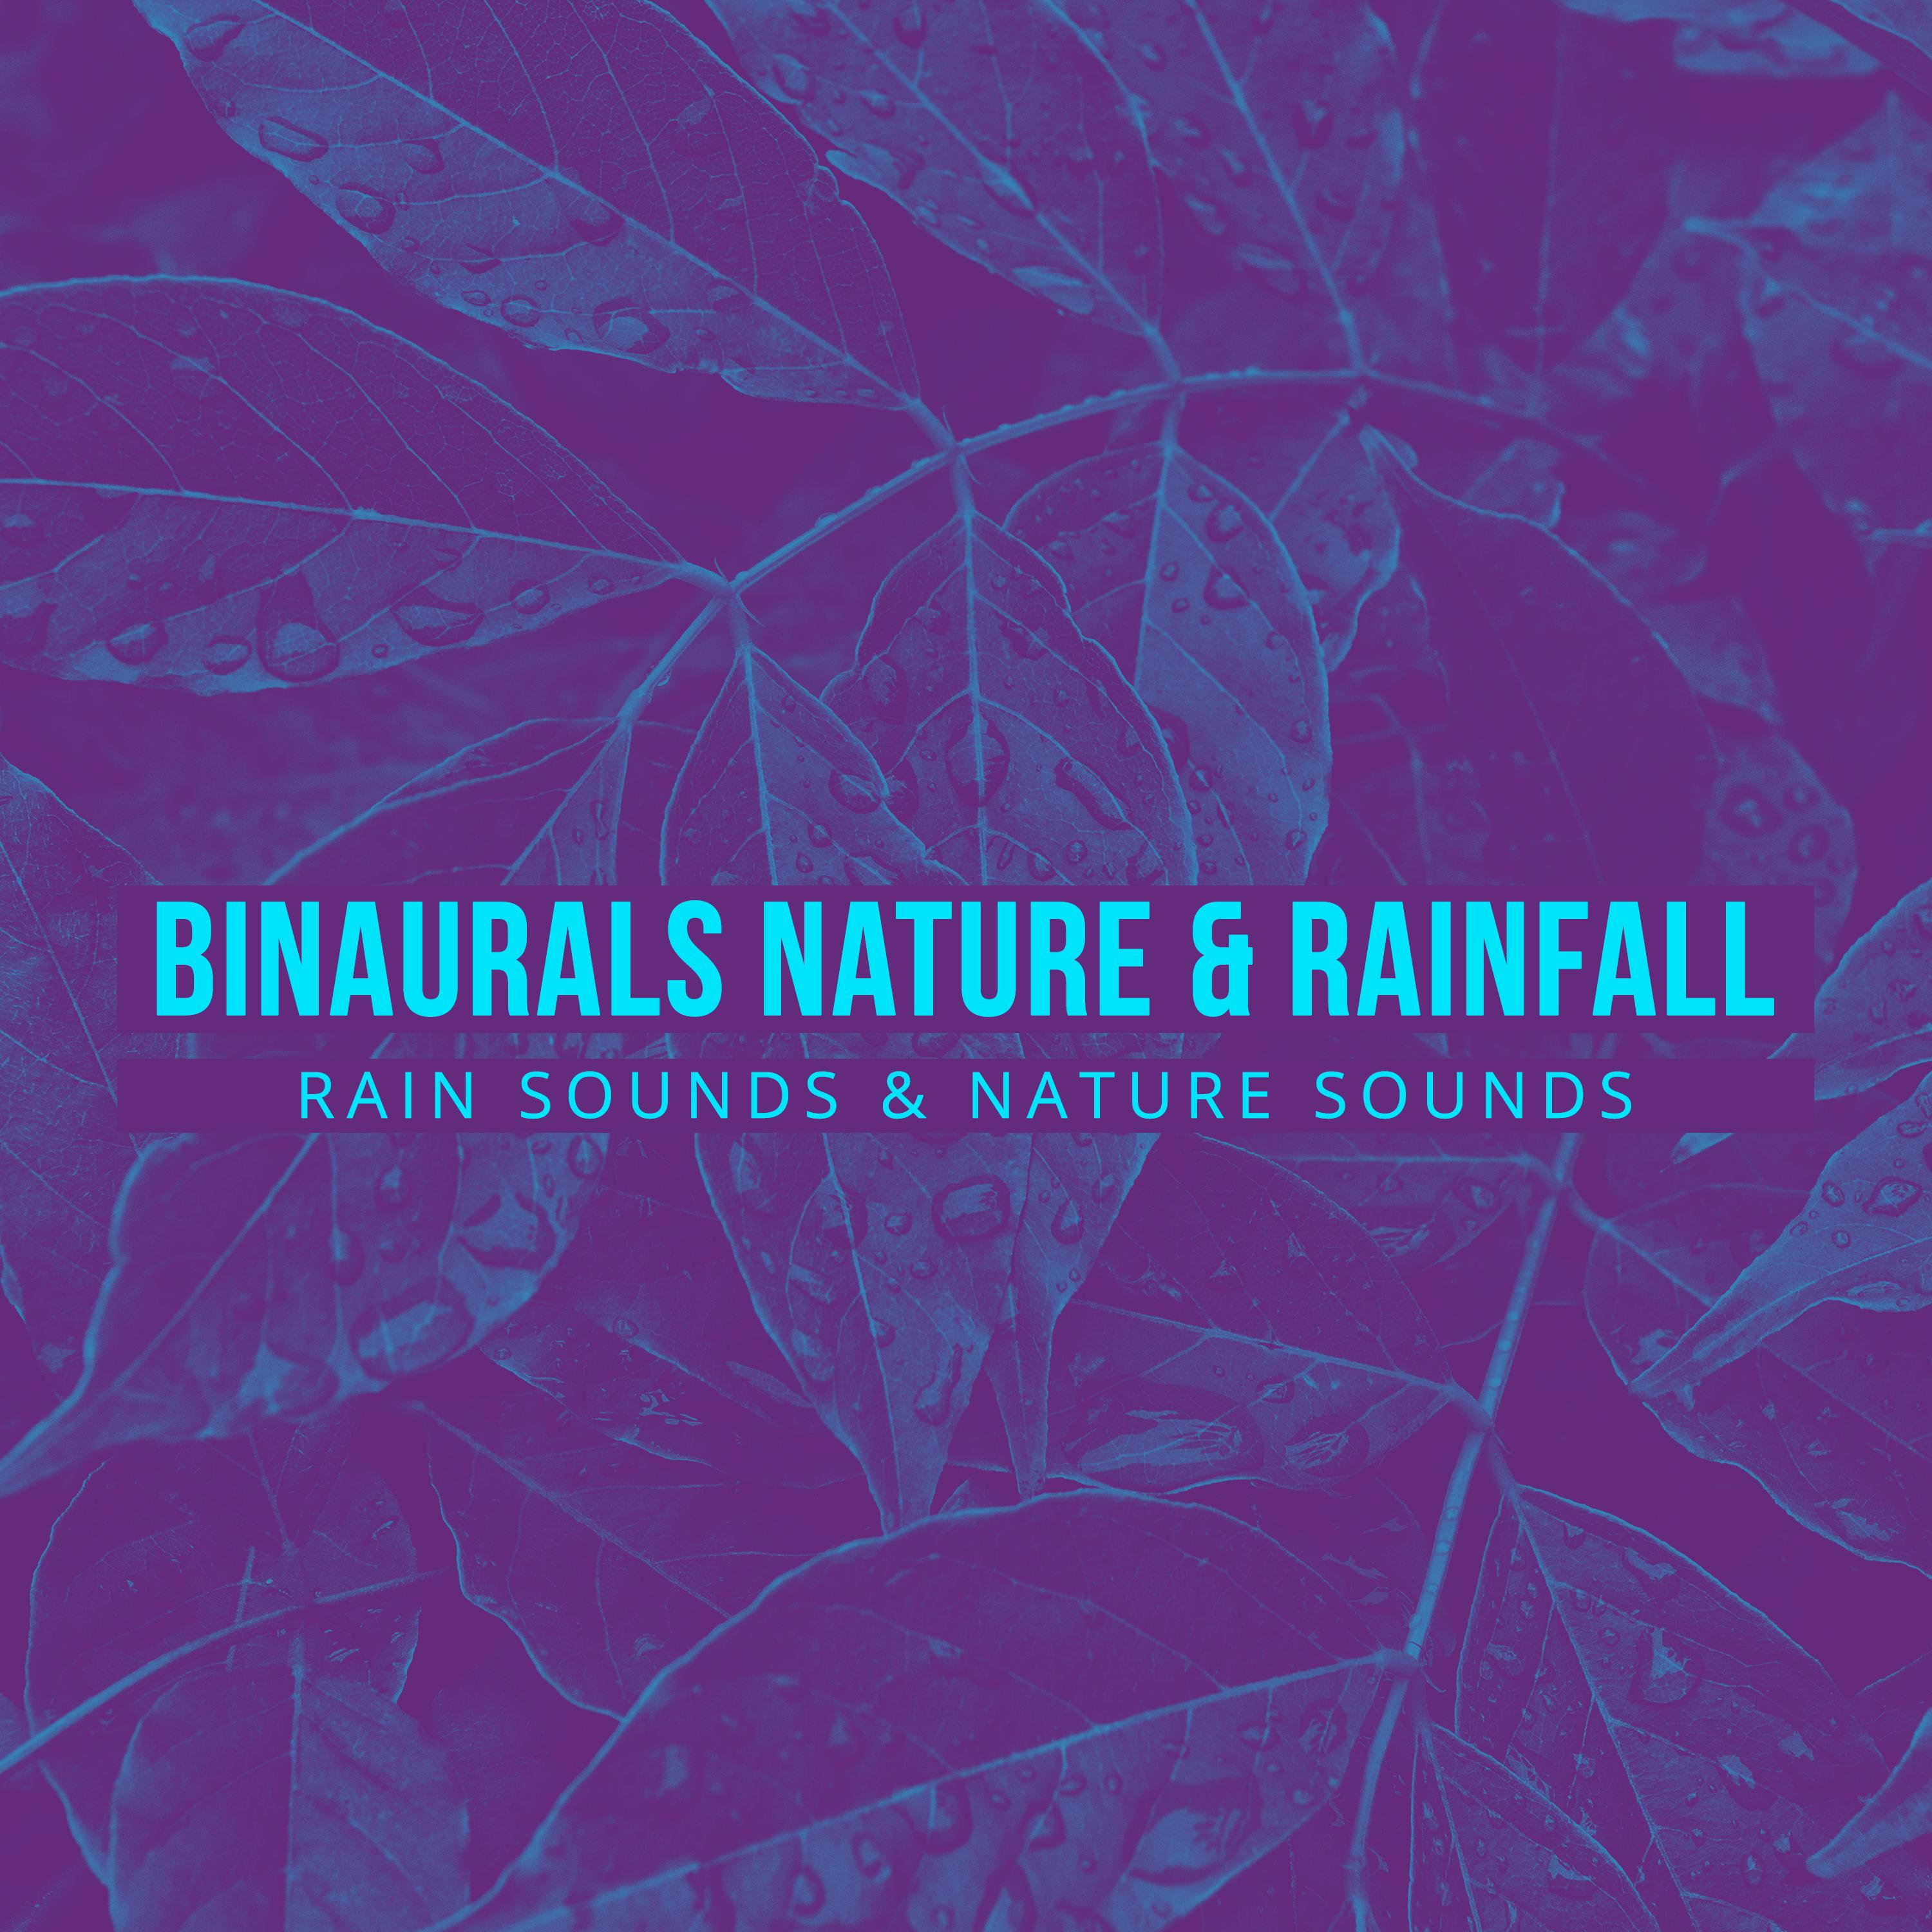 Binaurals Nature & Rainfall